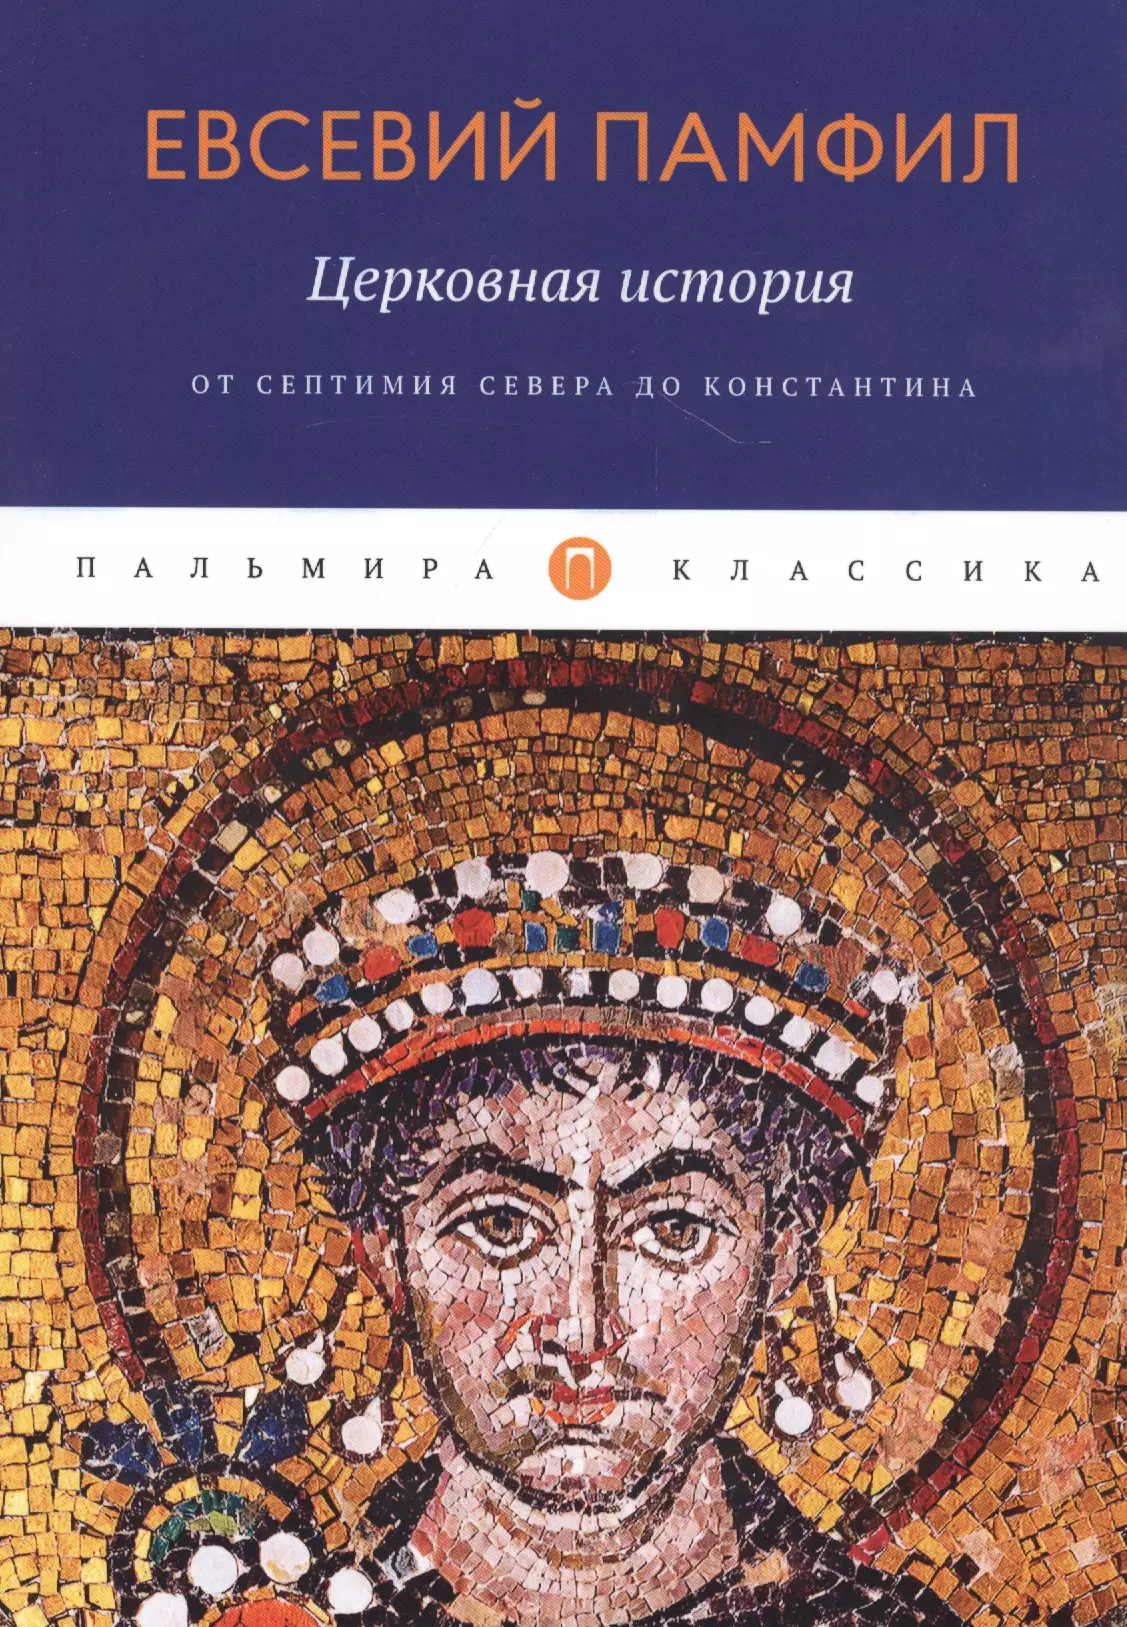 Евсевий Памфил - Церковная история. От Септимия Севера до Константина